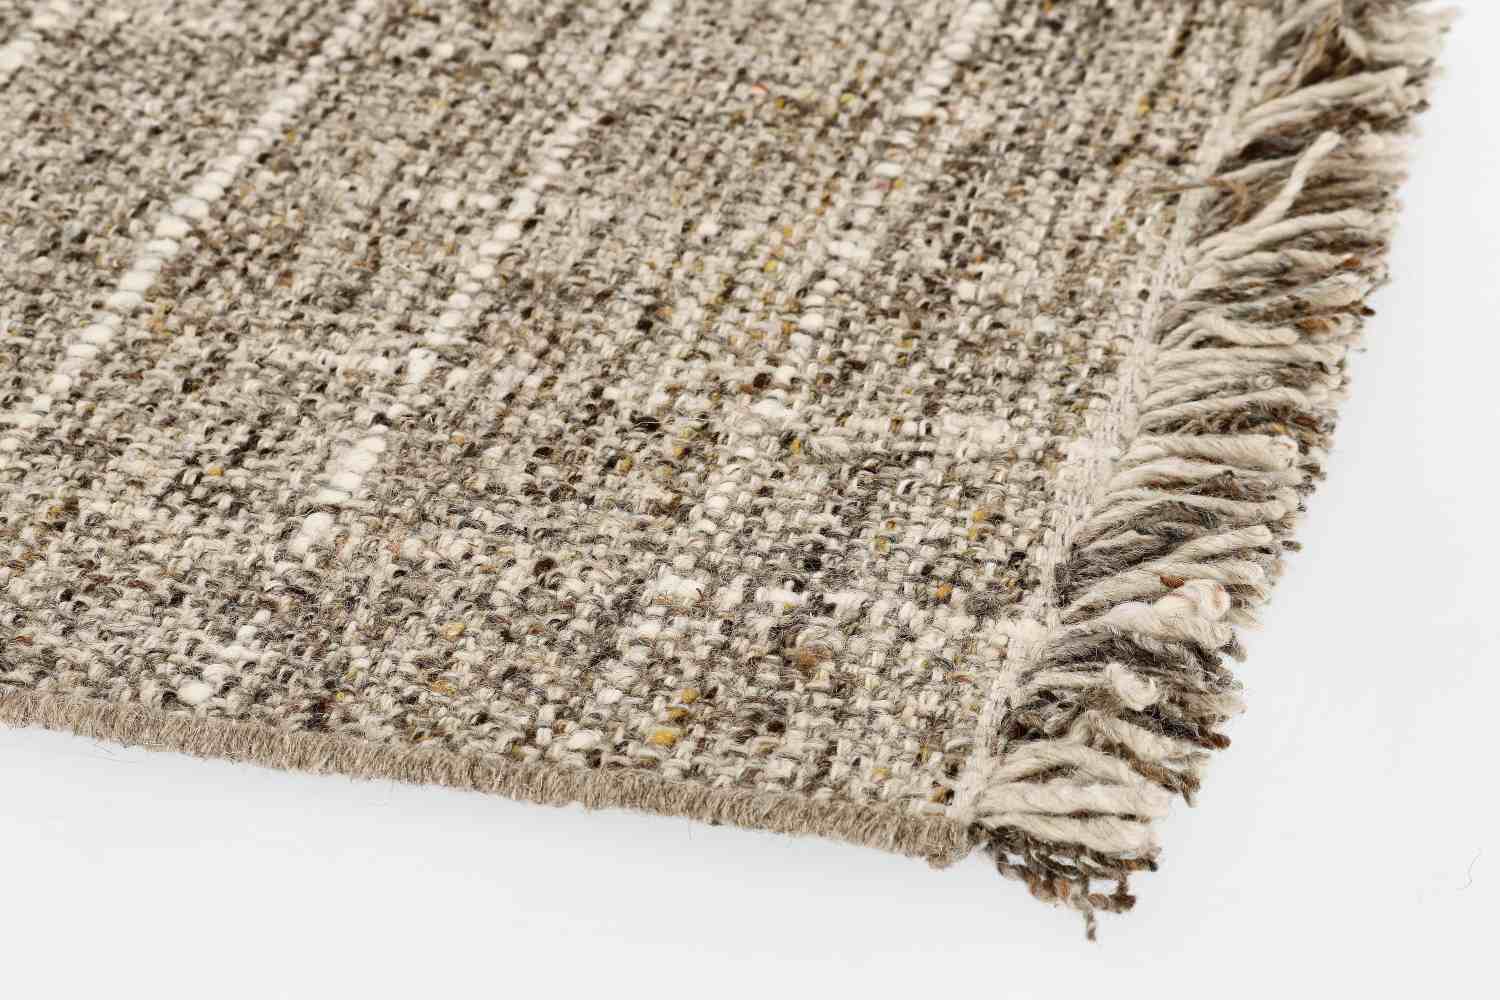 Der Teppich Senuri überzeugt mit seinem klassischen Design. Gefertigt wurde die Vorderseite aus 70% Polyester und 30% Wolle, die Rückseite ist aus Baumwolle. Der Teppich besitzt eine braunen Farbton und die Maße von 200x300 cm.